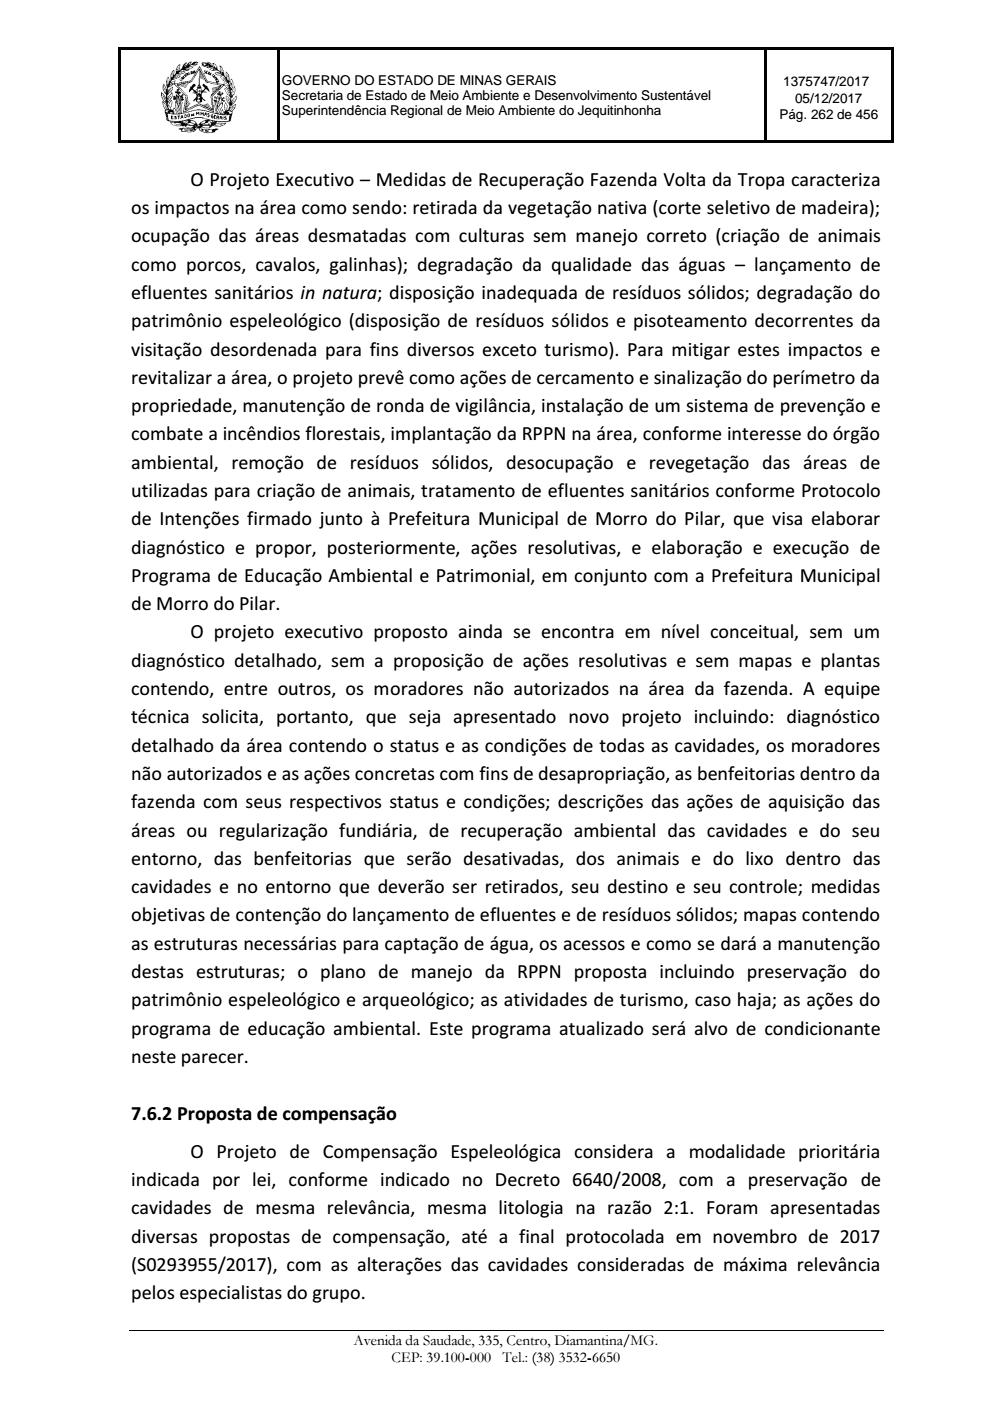 Page 262 from Parecer único da Secretaria de estado de Meio Ambiente e Desenvolvimento Sustentável (SEMAD)